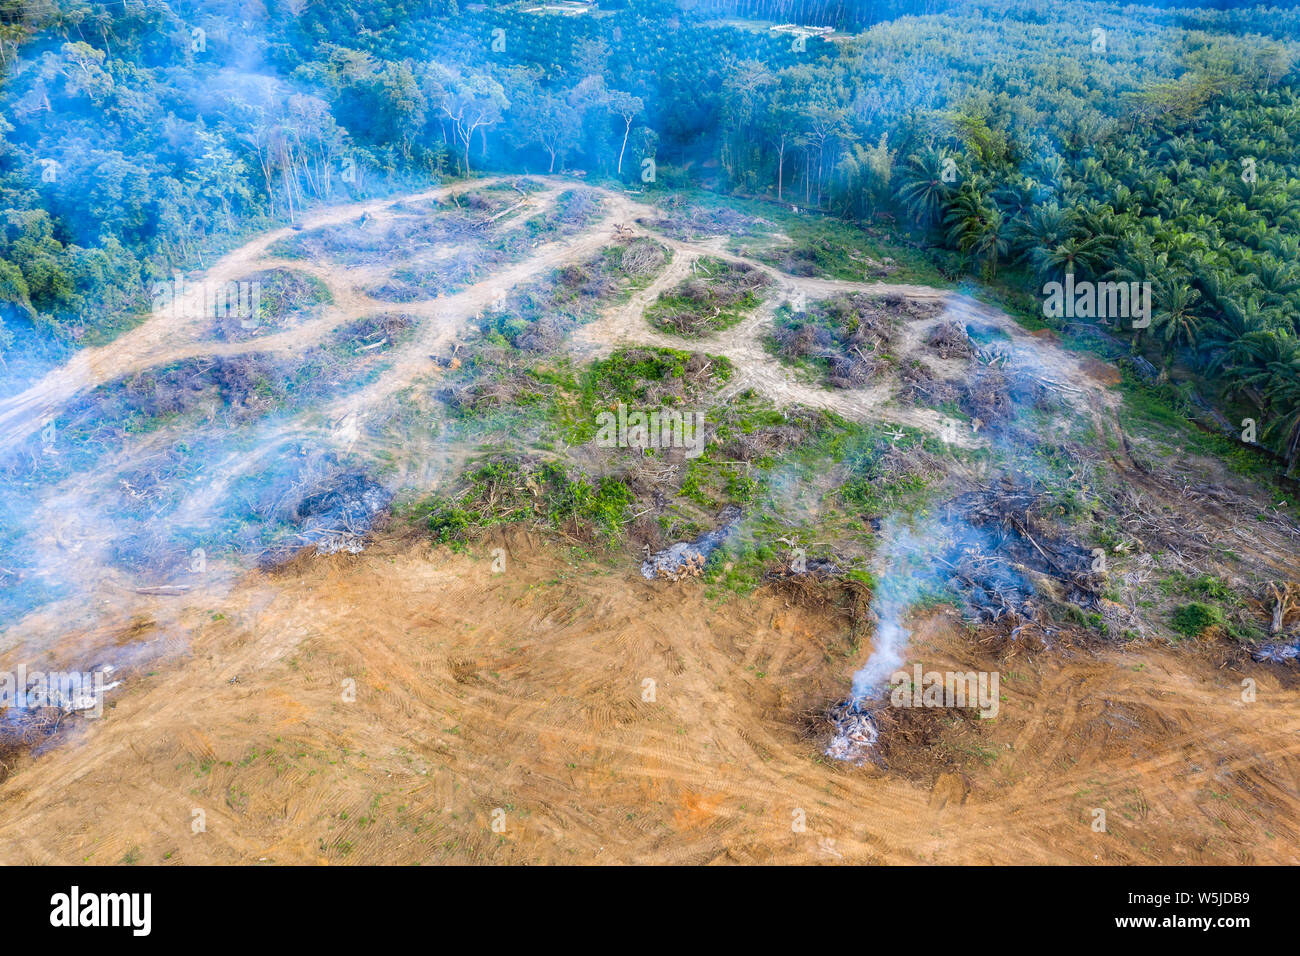 Vue aérienne de la déforestation. Rainforest supprimée pour faire place à des plantations de caoutchouc et d'huile de palme Banque D'Images